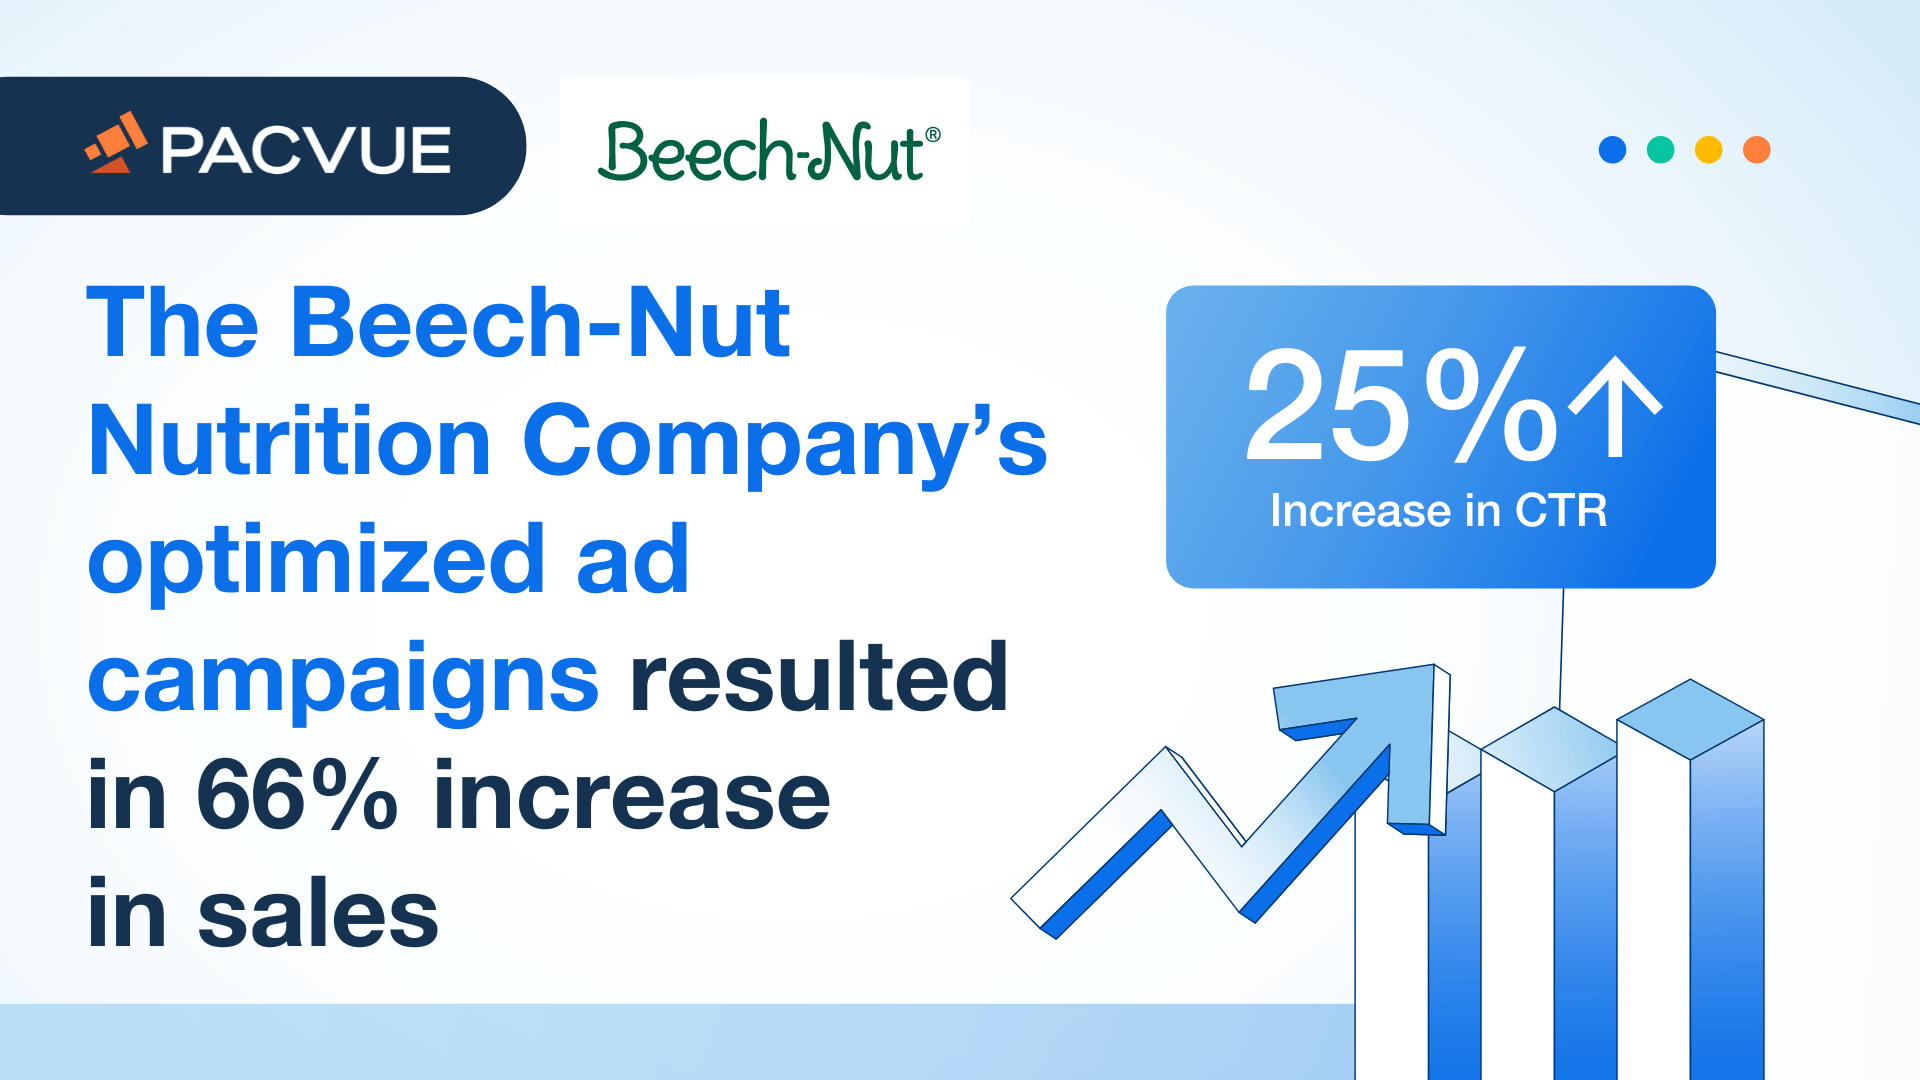 Le campagne pubblicitarie ottimizzate della Beech-Nut Nutrition Company hanno portato a un aumento delle vendite del 66%.